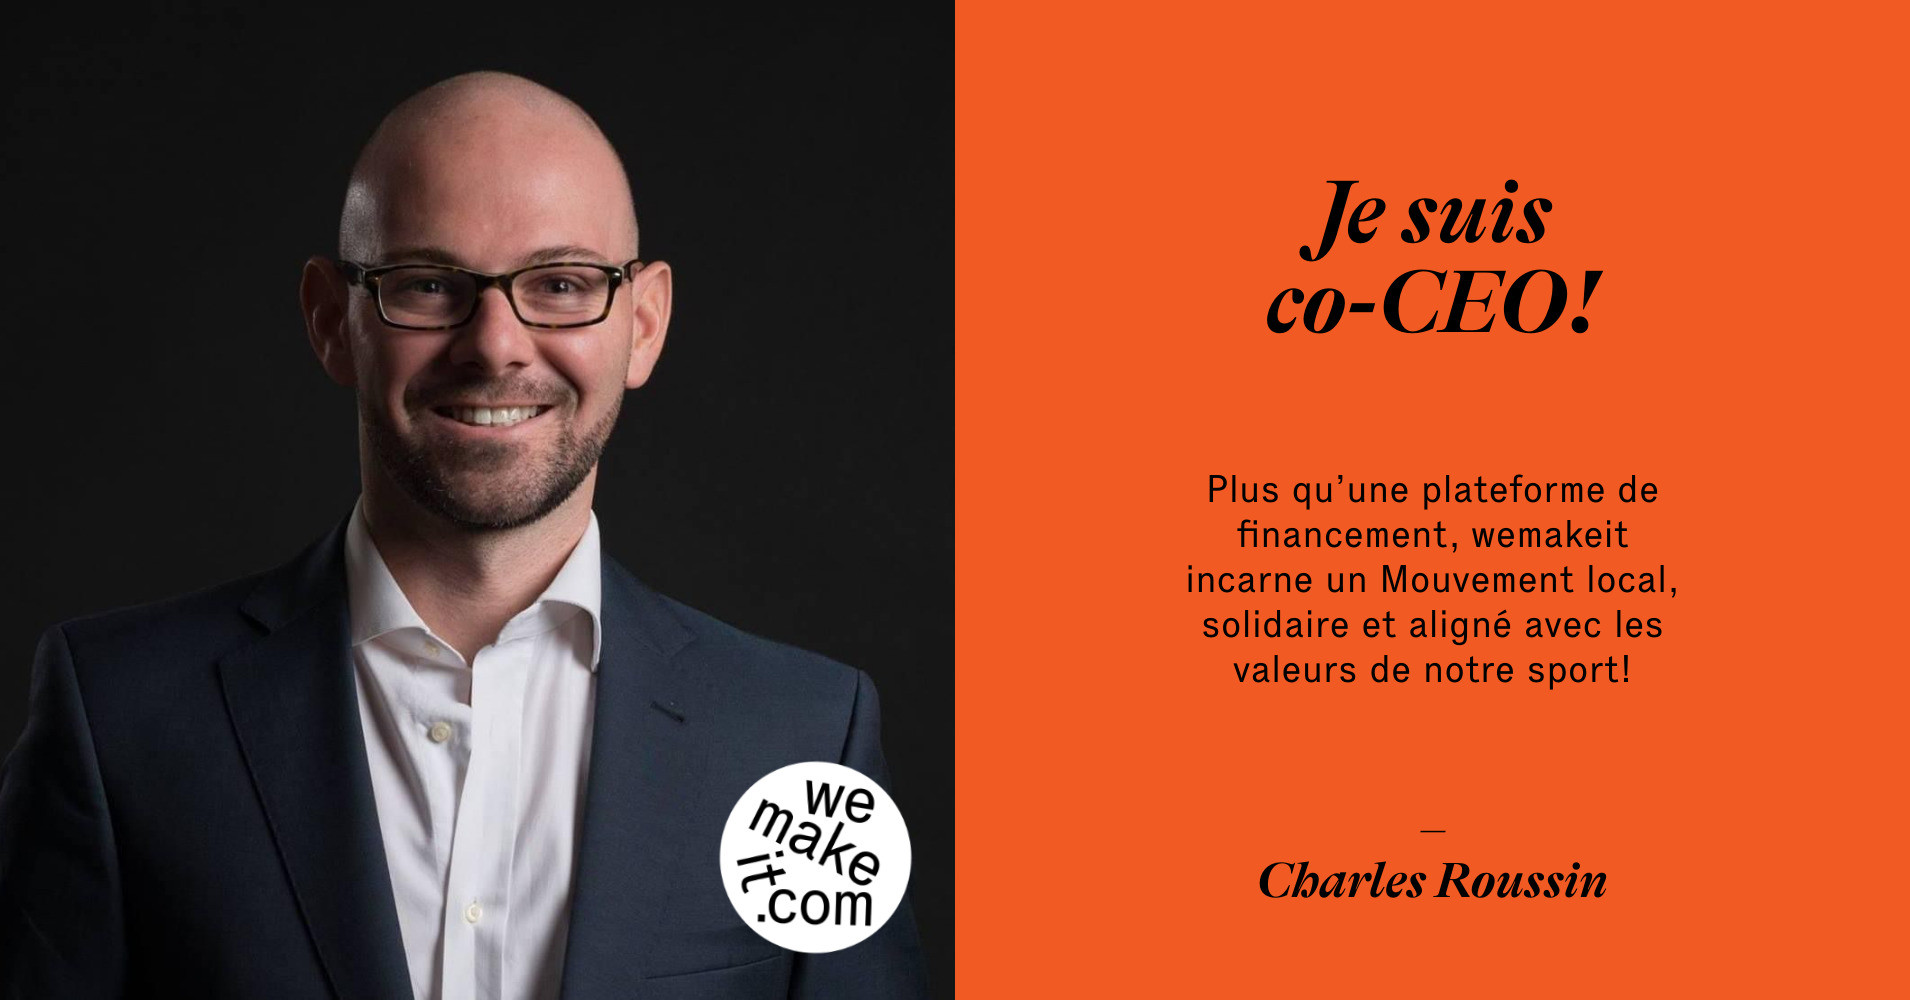 Charles Roussin says Plus qu’une plateforme de financement, wemakeit incarne un Mouvement local, solidaire et aligné avec les valeurs de notre sport!